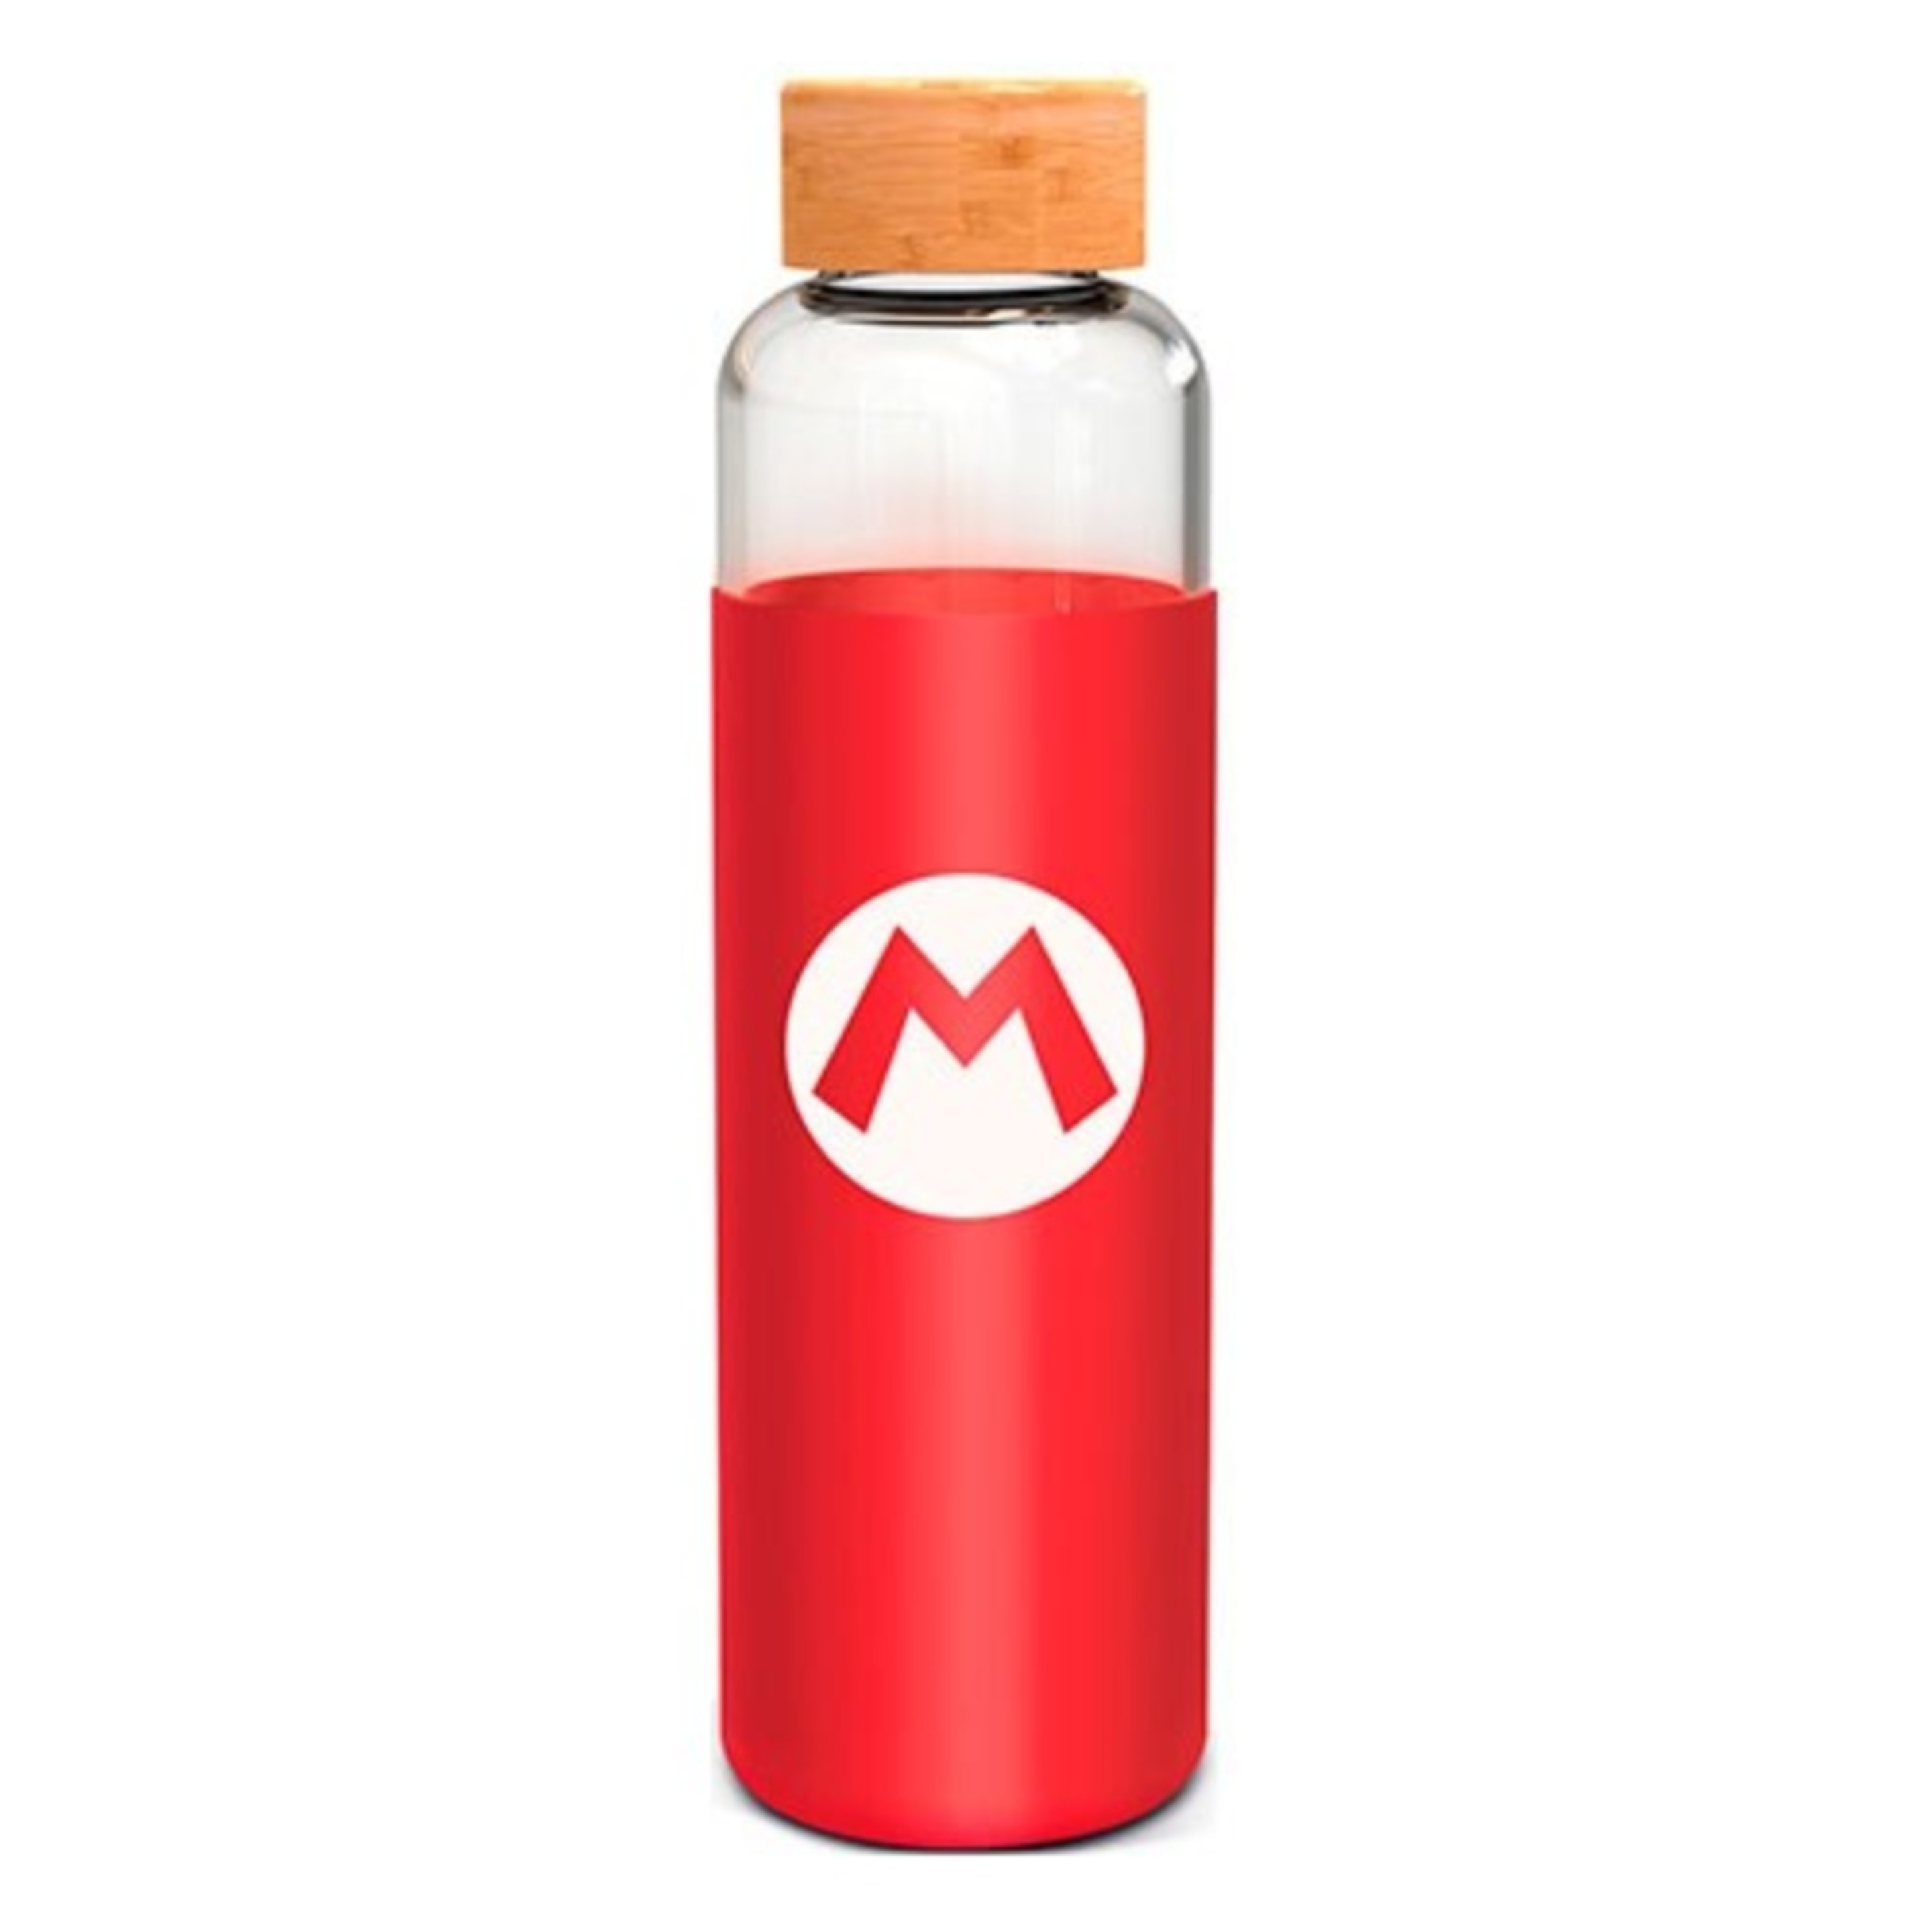 Botella Super Mario Bros 63653 - rojo - 